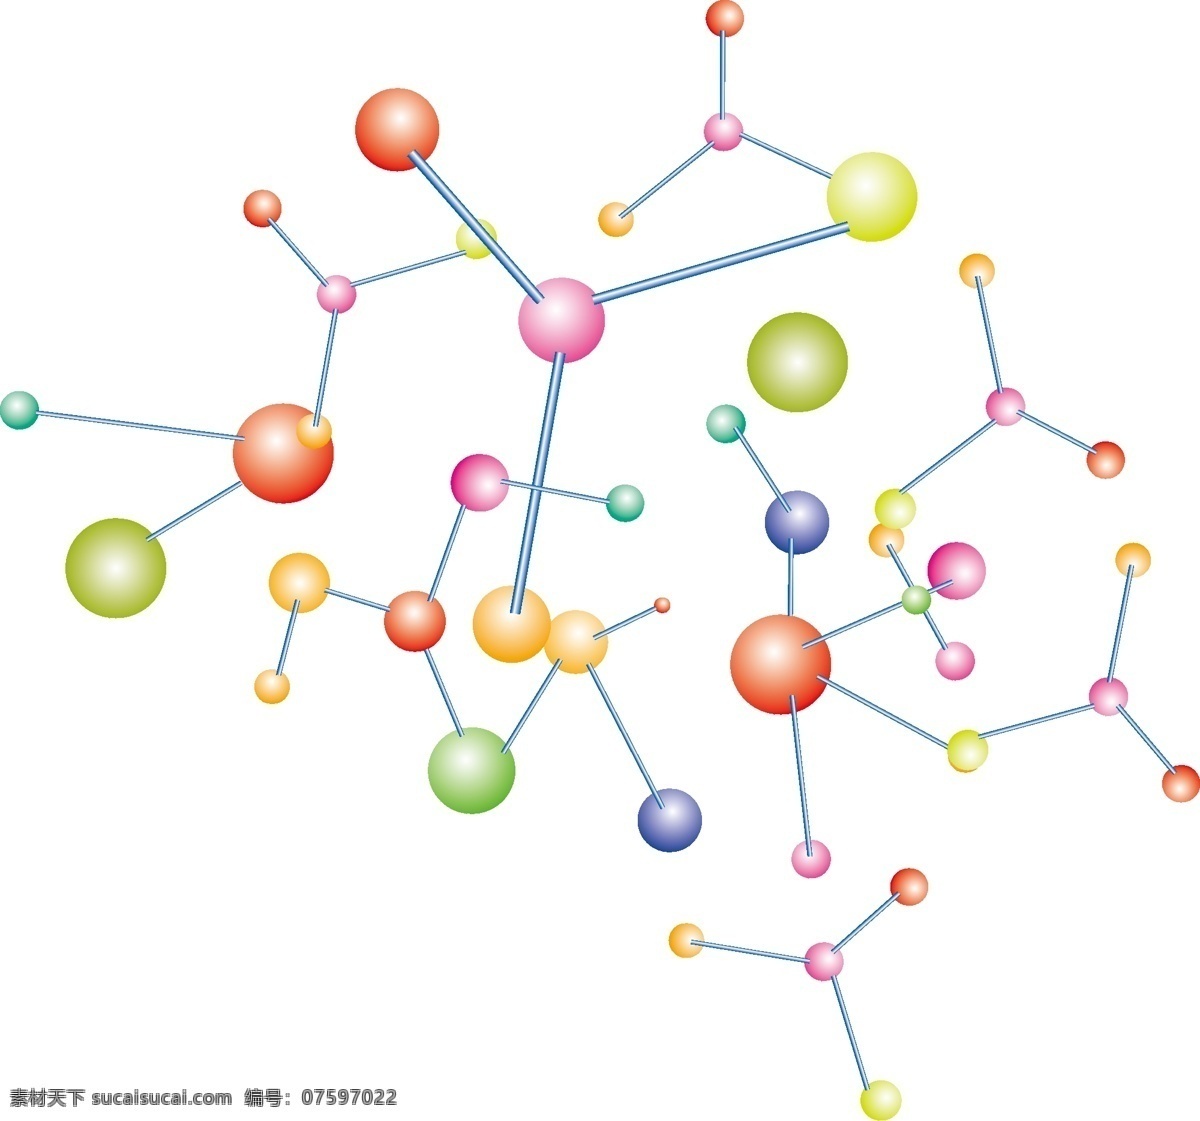 分子 细胞 分子式 原子 背景 化学 生活百科 结构图 矢量素材 其他矢量 矢量 矢量图库 设计素材